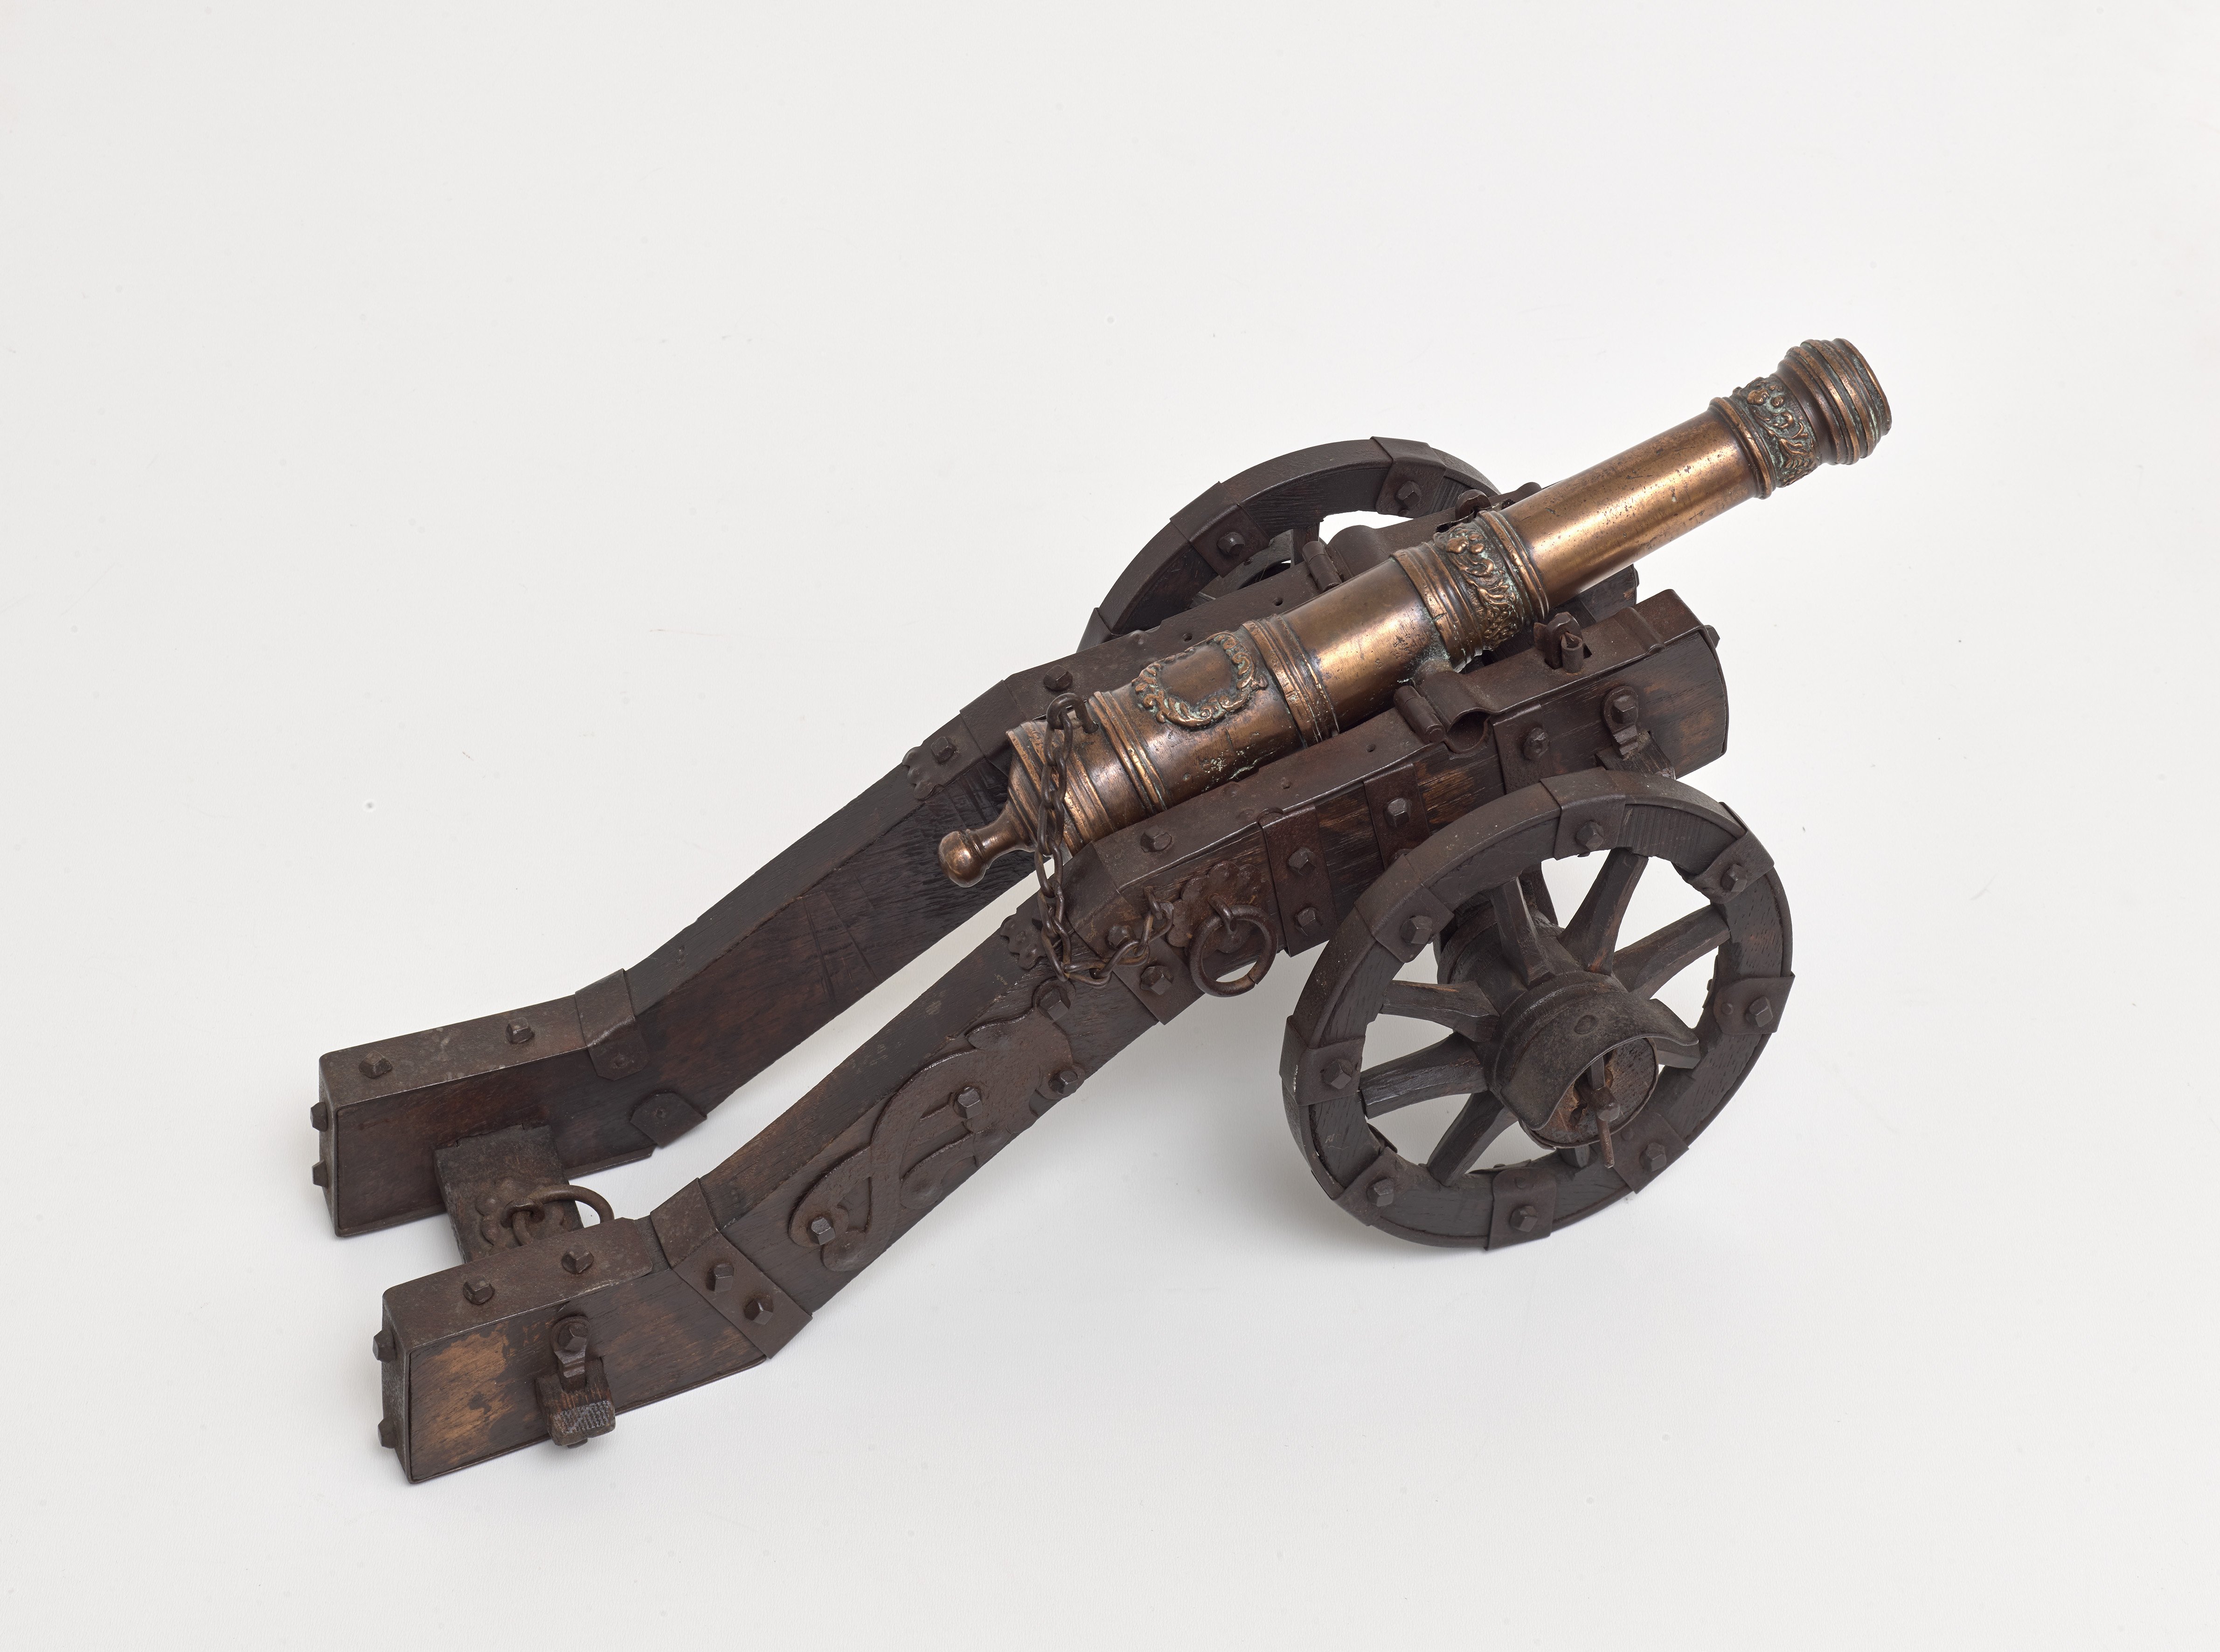 Kanonenmodell, 17. Jahrhundert (Städtisches Museum Schloss Rheydt CC BY)